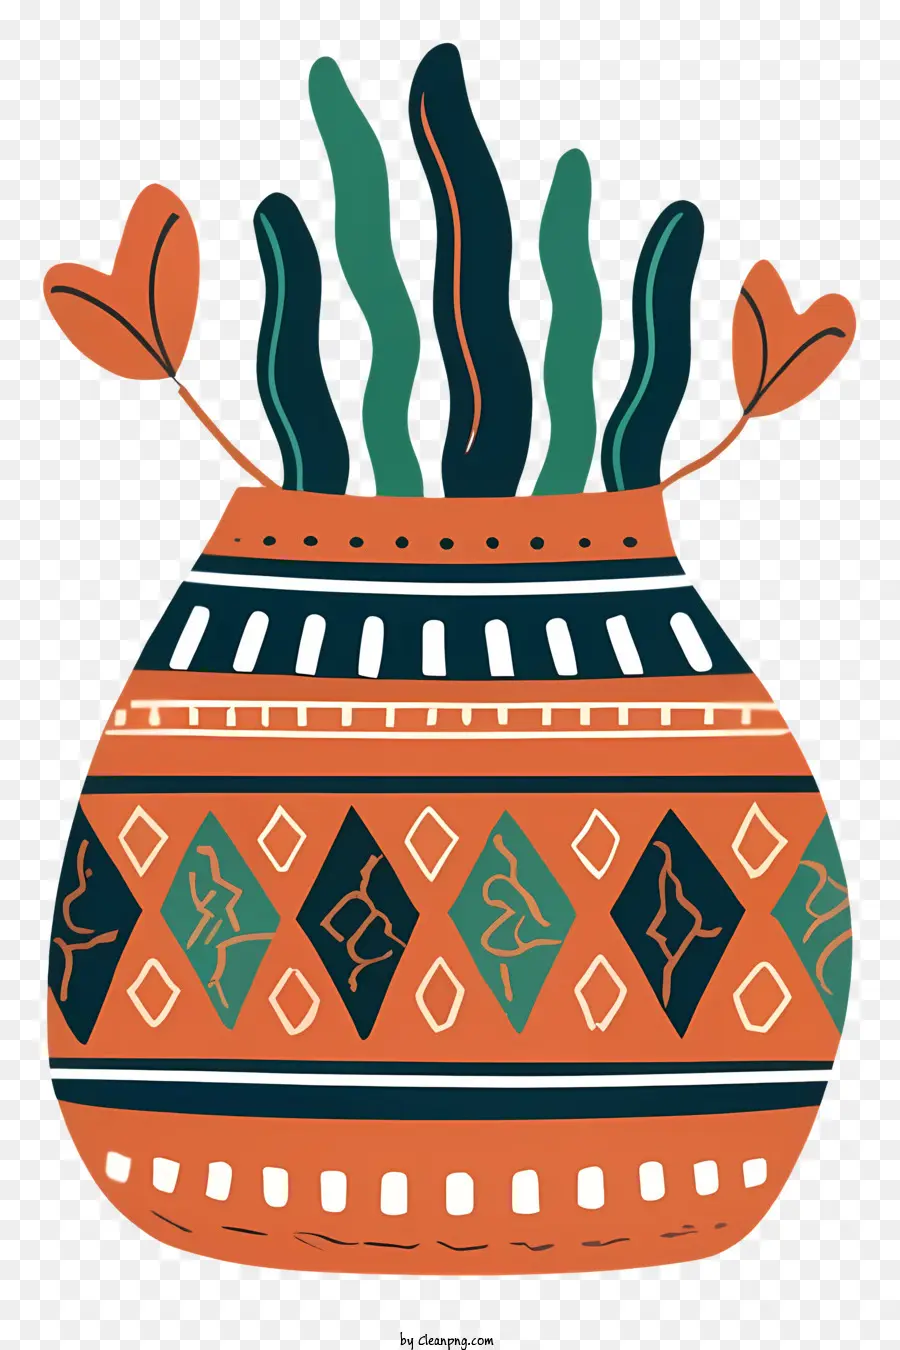 Cartoon Southwest Tribal Design Dekoratives Objekt Grün und orangefarbene Farben helle und kräftige Farben - Fett, farbenfrohe Vase für Räume im Südwestenstil